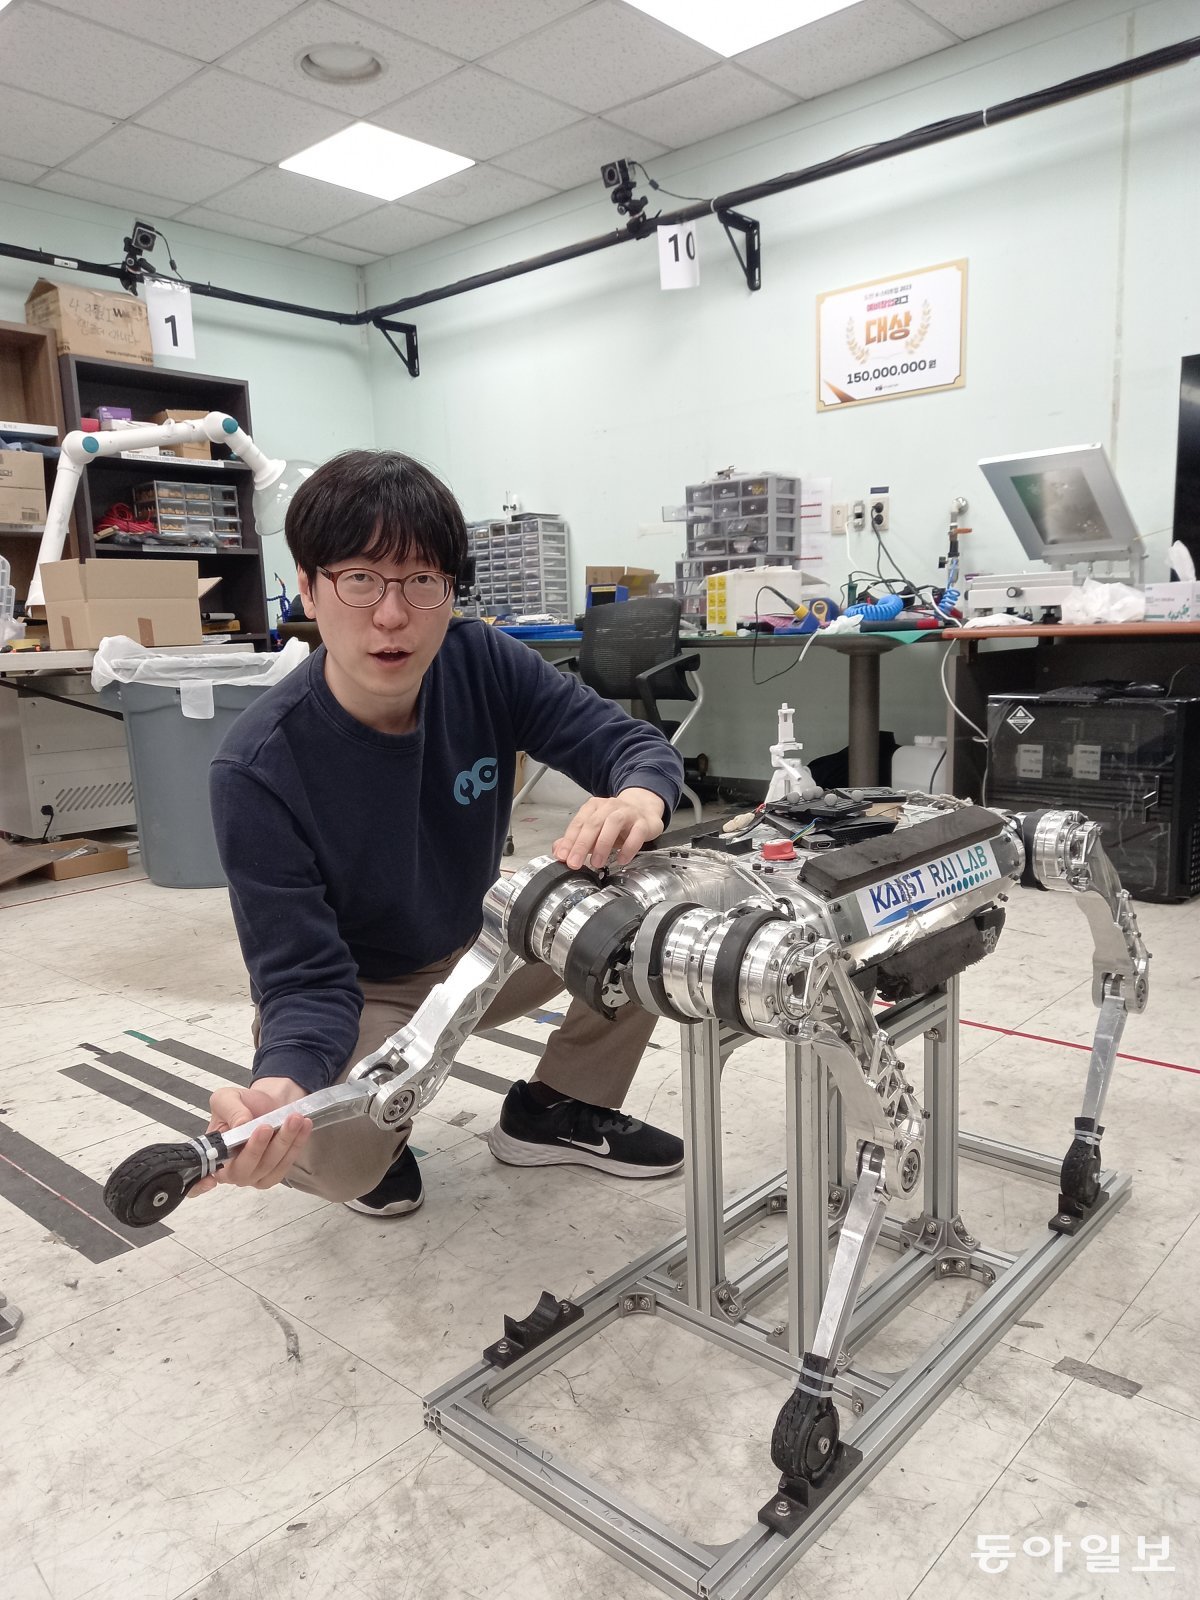 황보제민 라이온로보틱스 대표이사 겸 KAIST 교수가 7일 대전 KAIST 연구실에서 사족 로봇 라이보2 개발 원형인 라이보1의 다리를 들어 보이면서 “배터리 사용량을 줄이려고 관절을 부드럽게 움직이게 했다”고 설명하고 있다.